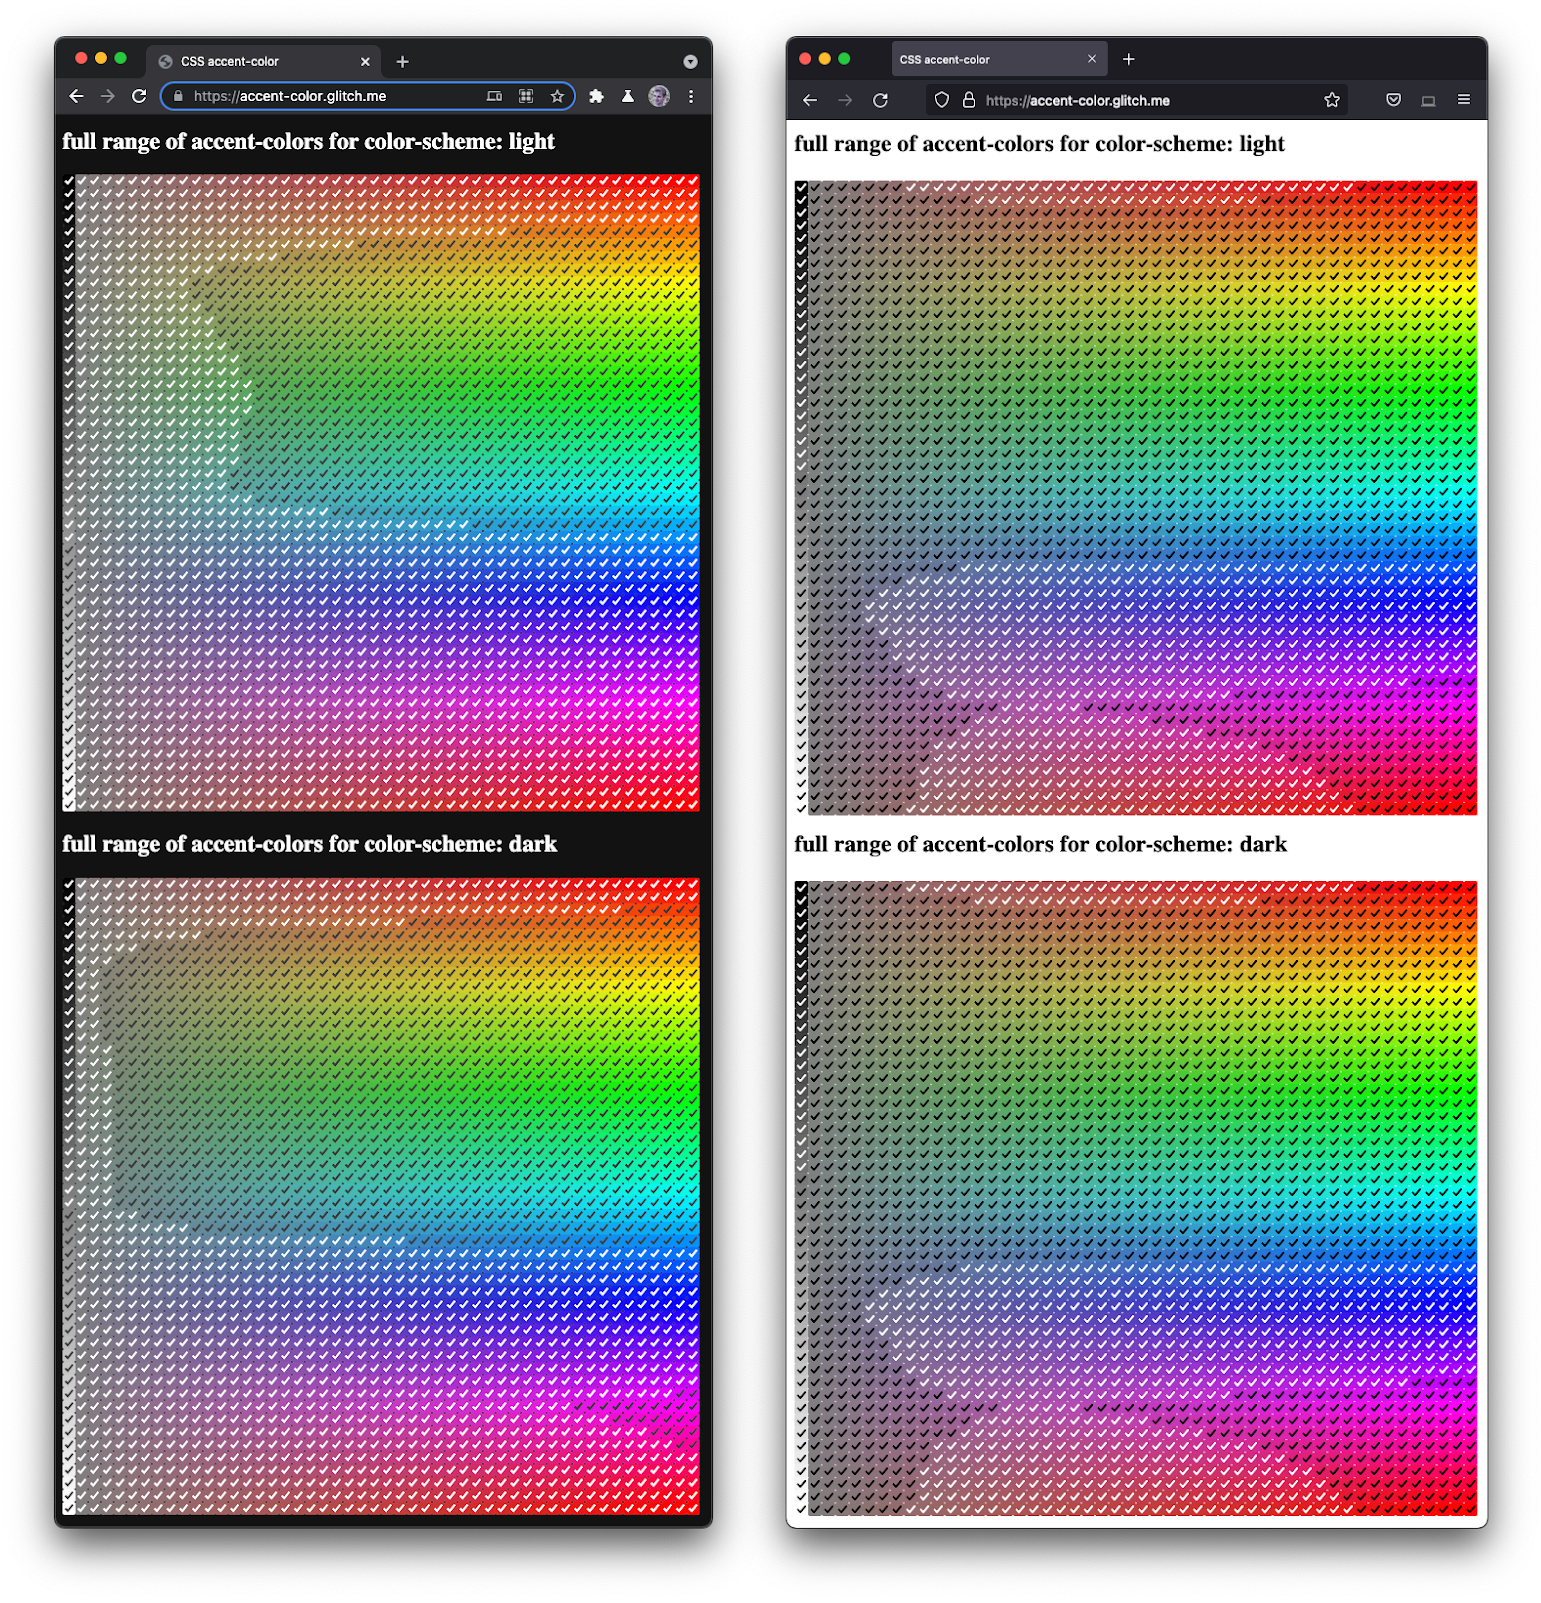 Una captura de pantalla de Firefox y Chromium uno al lado del otro
  renderizando un espectro completo de casillas
de verificación en varios tonos y oscuridades.